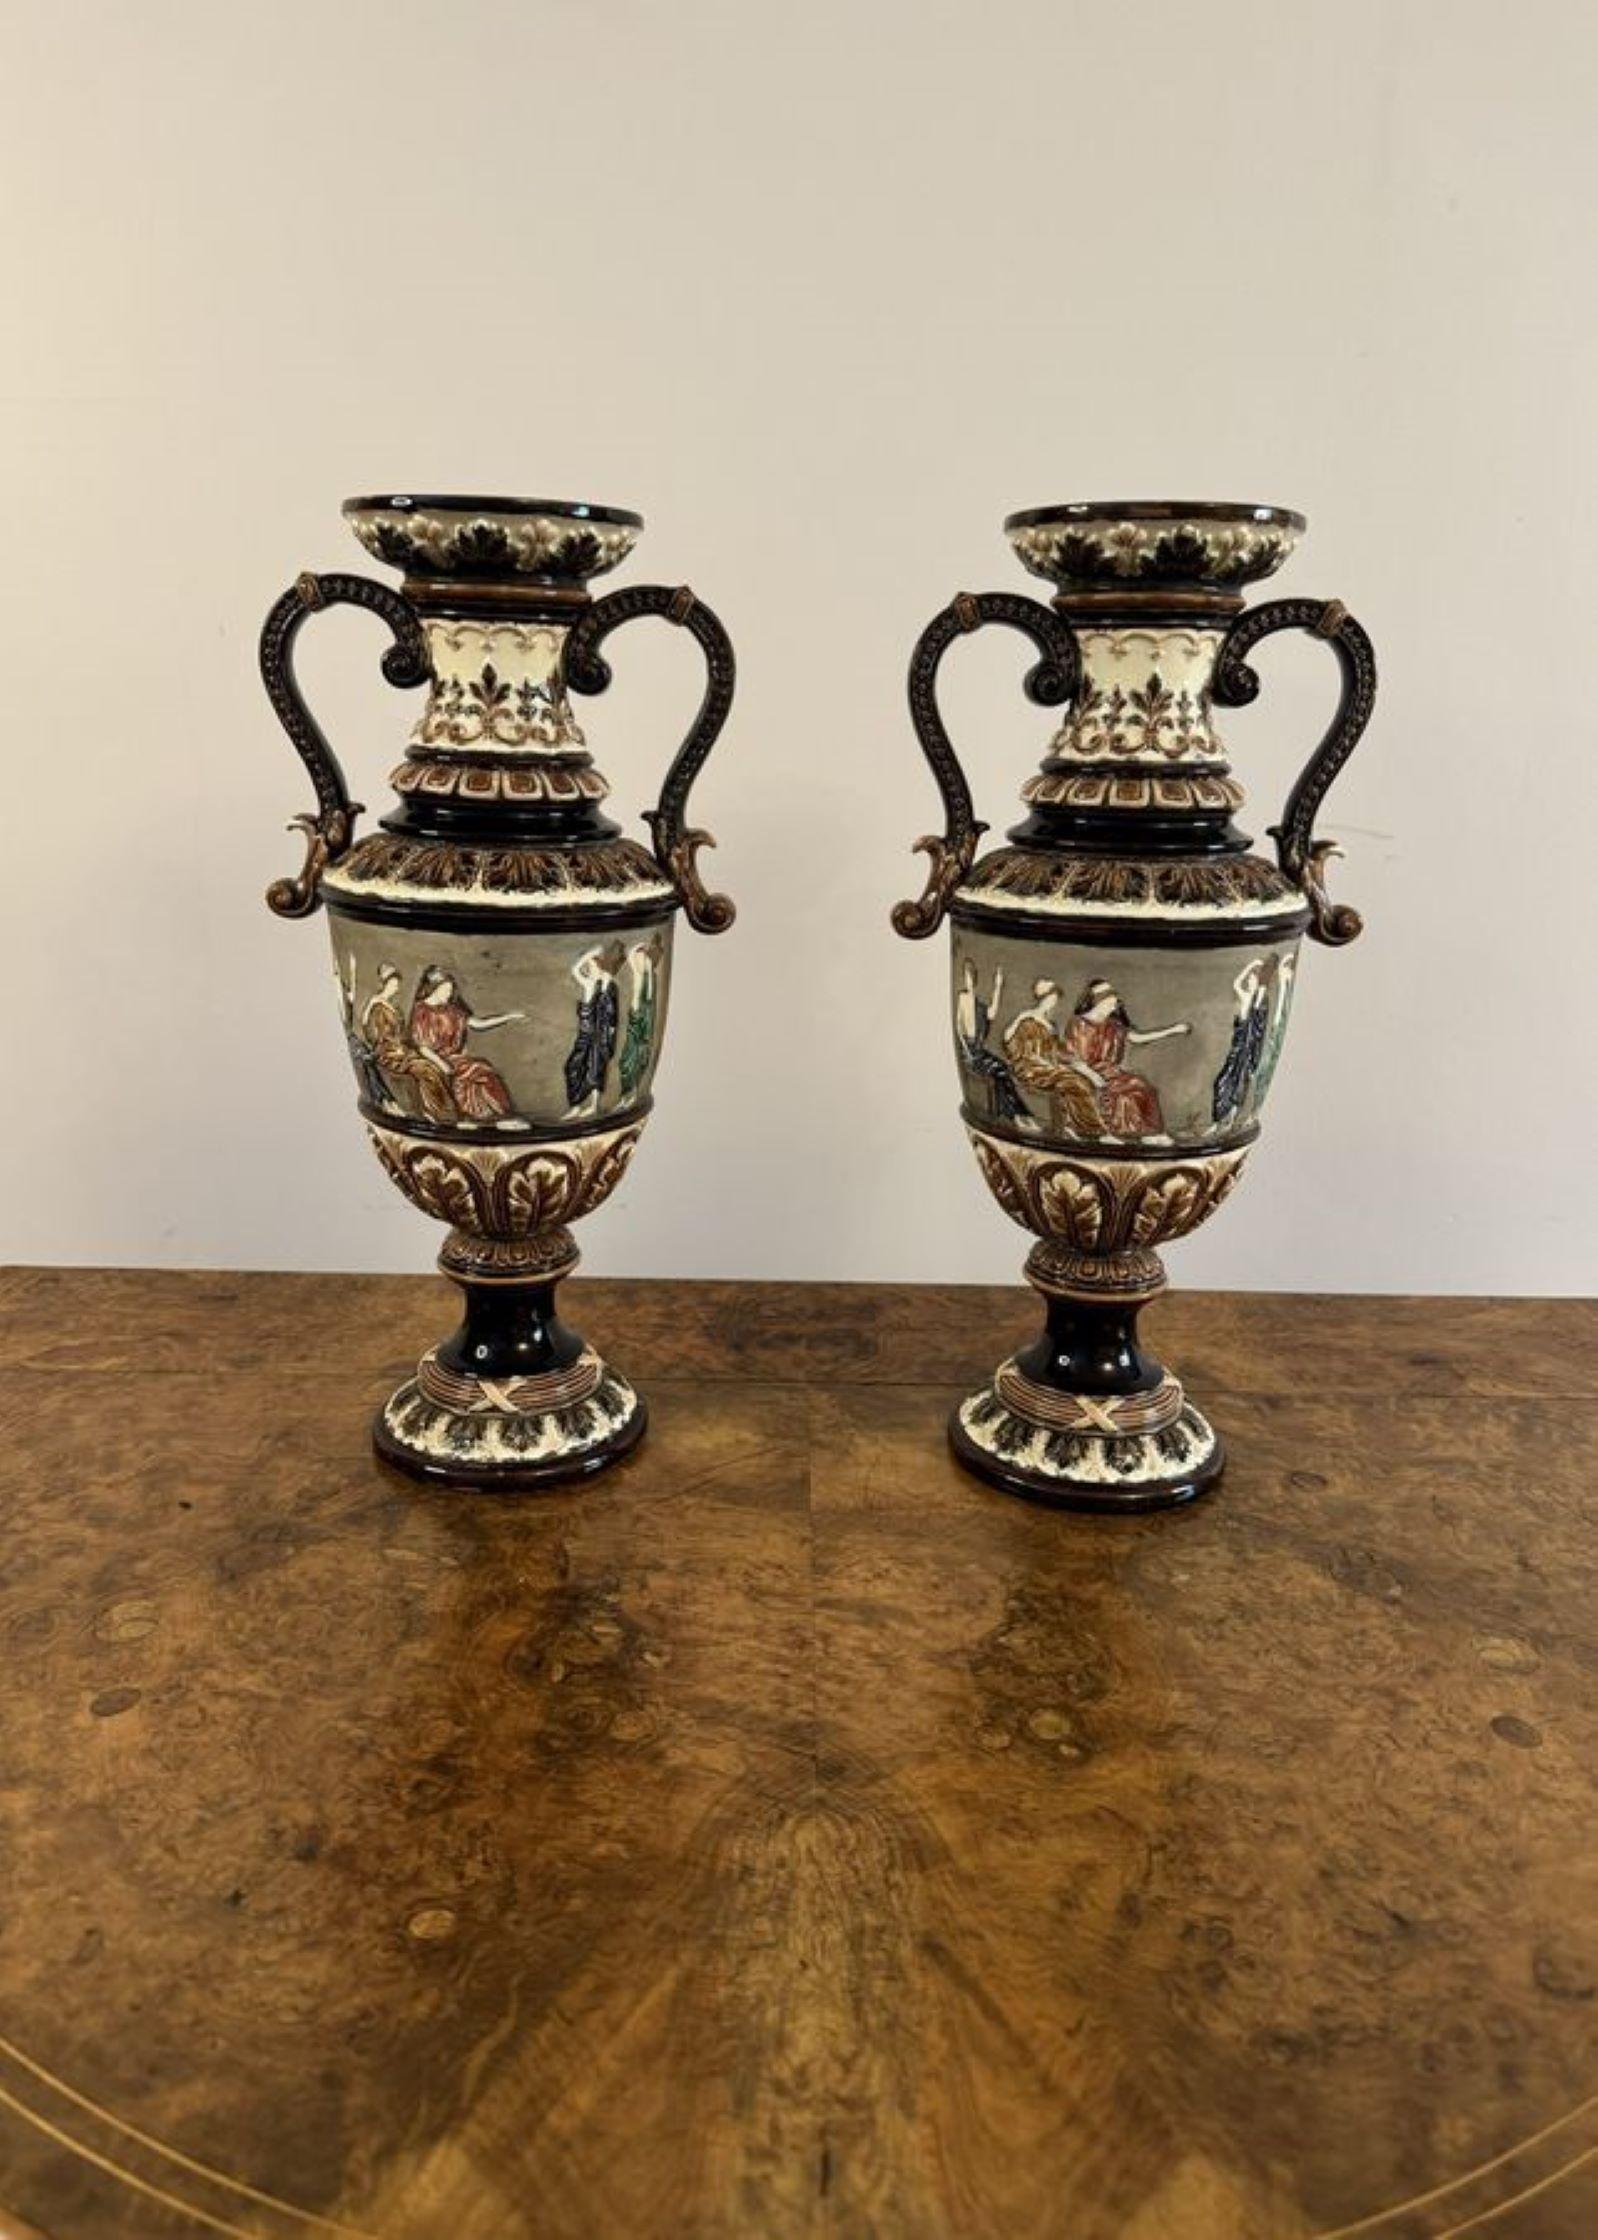 Ungewöhnliche Qualität Paar antike viktorianische Vasen mit einer Qualität Paar antike viktorianische Vasen, verziert mit Figuren, Rollen, Blumen und Blätter von Hand in atemberaubenden braunen, grünen, blauen Farben gemalt, mit einem geriffelten